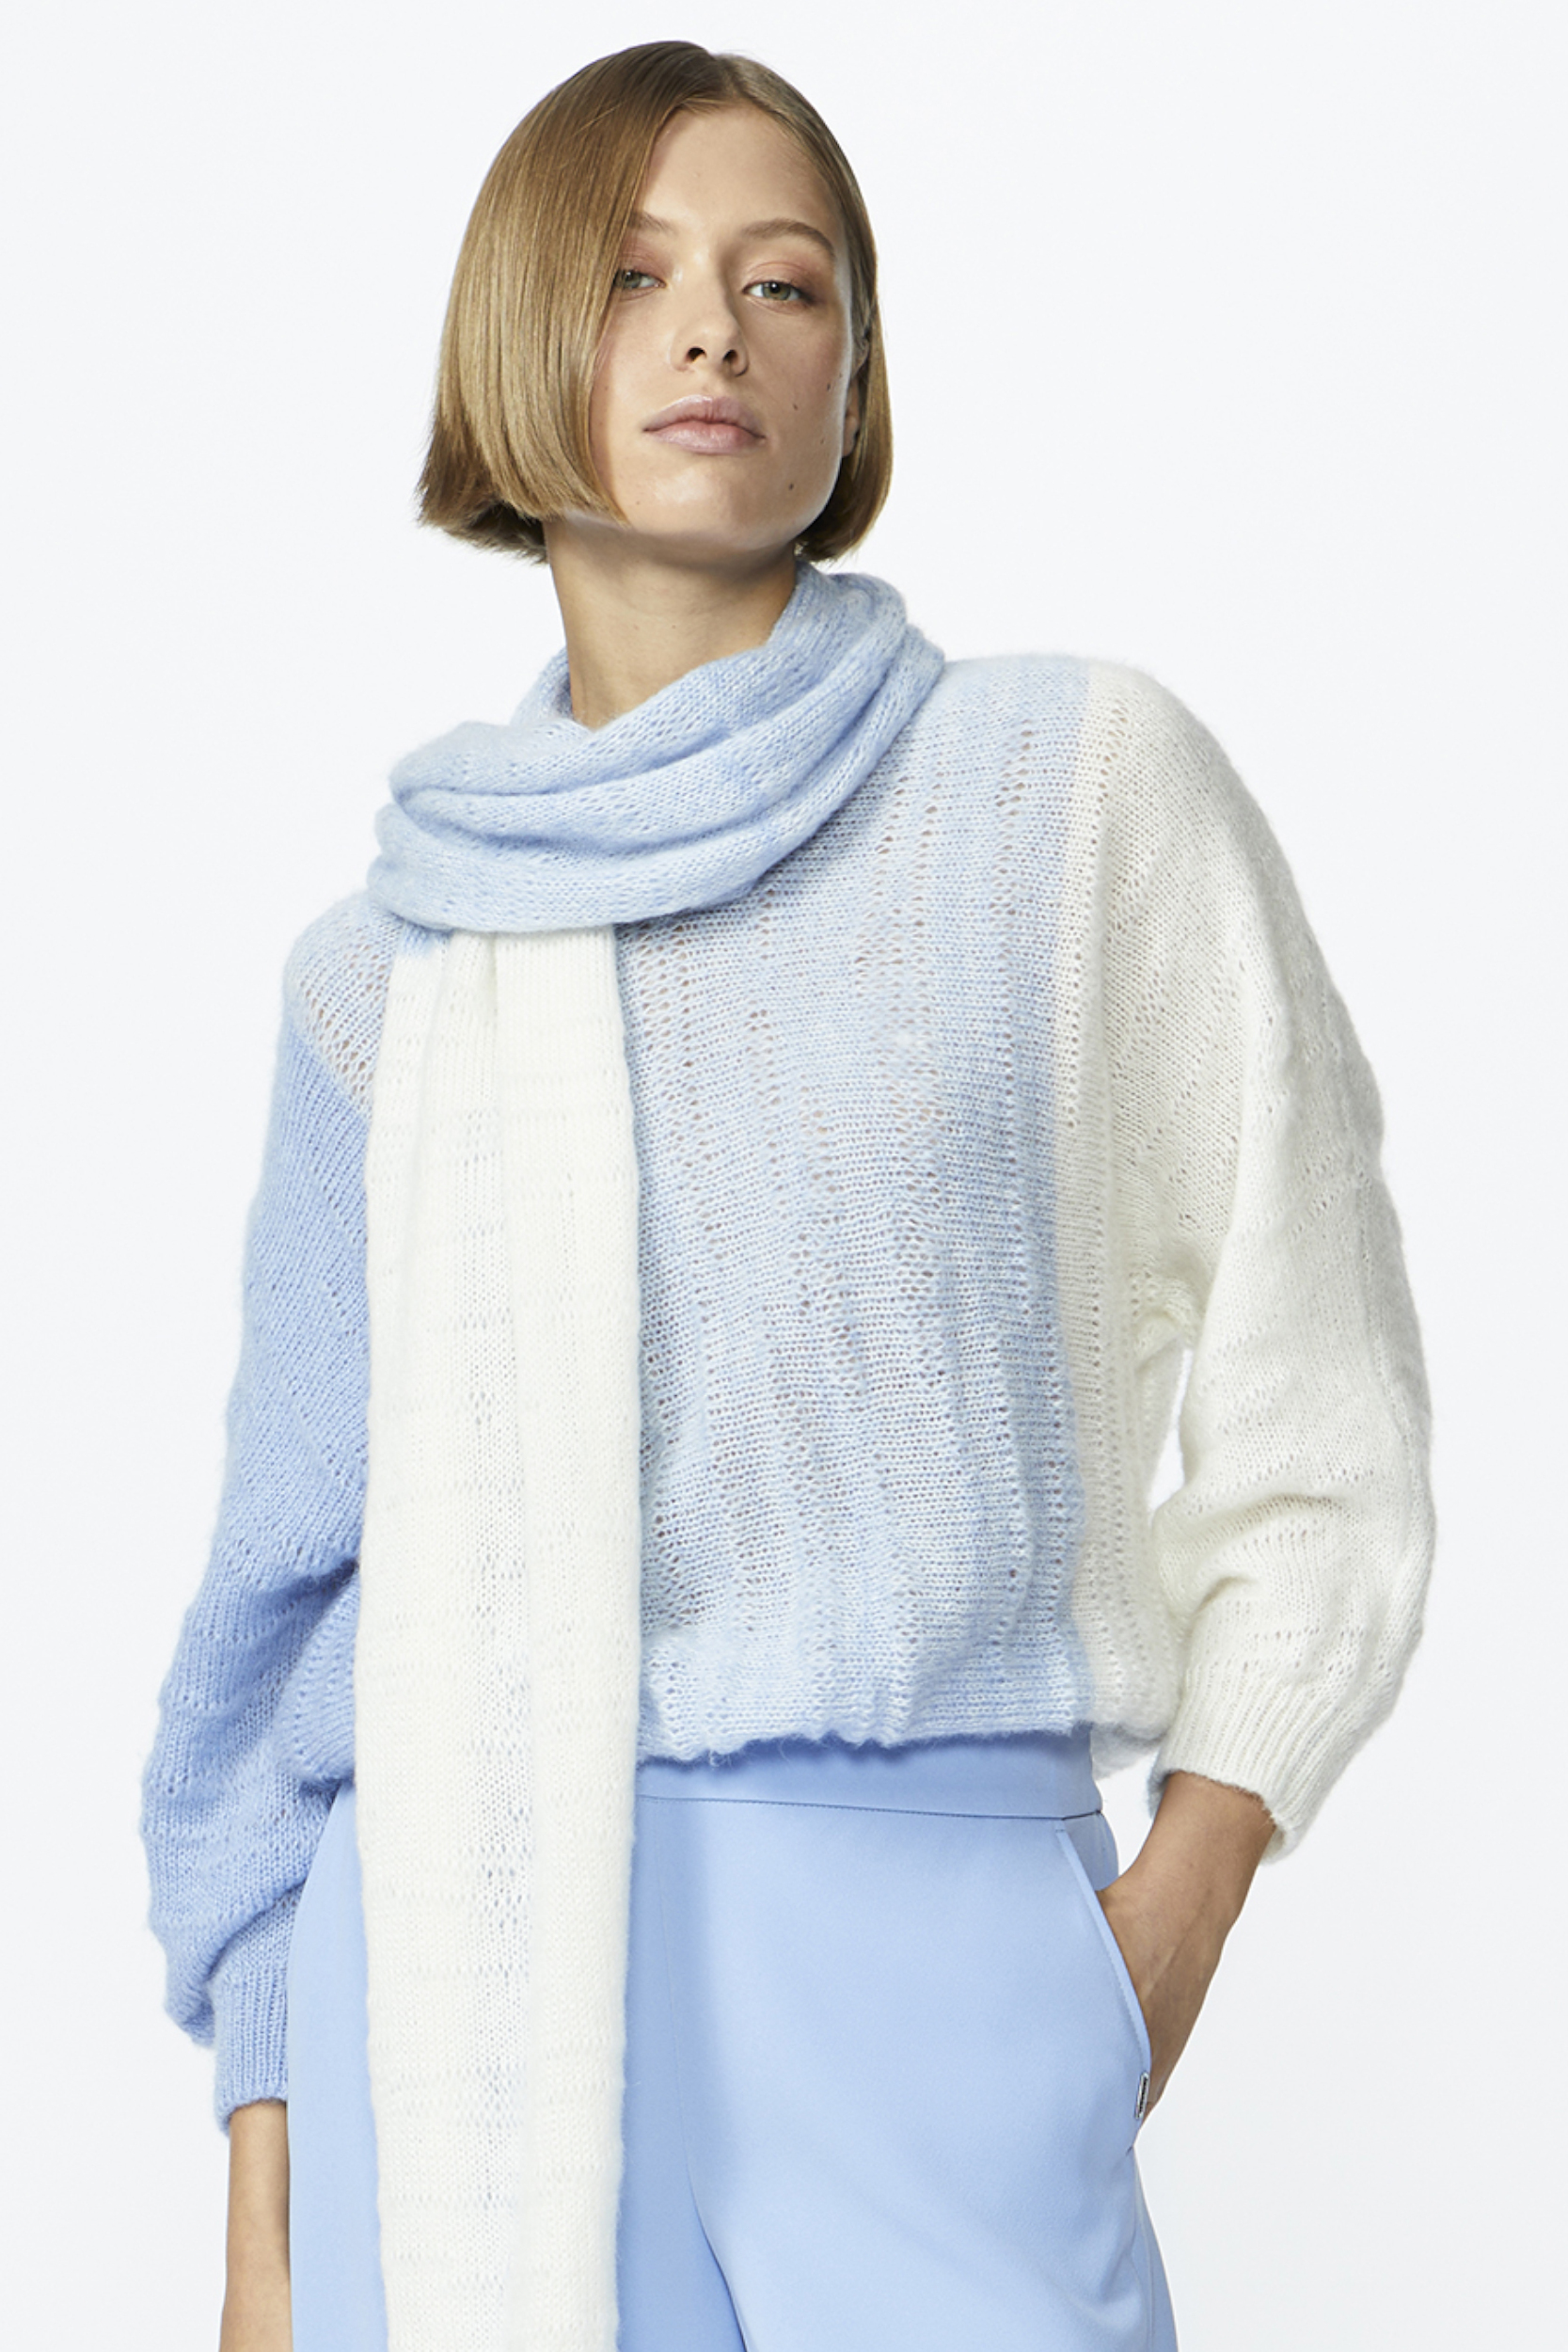 Woollen scarf with gradient pattern